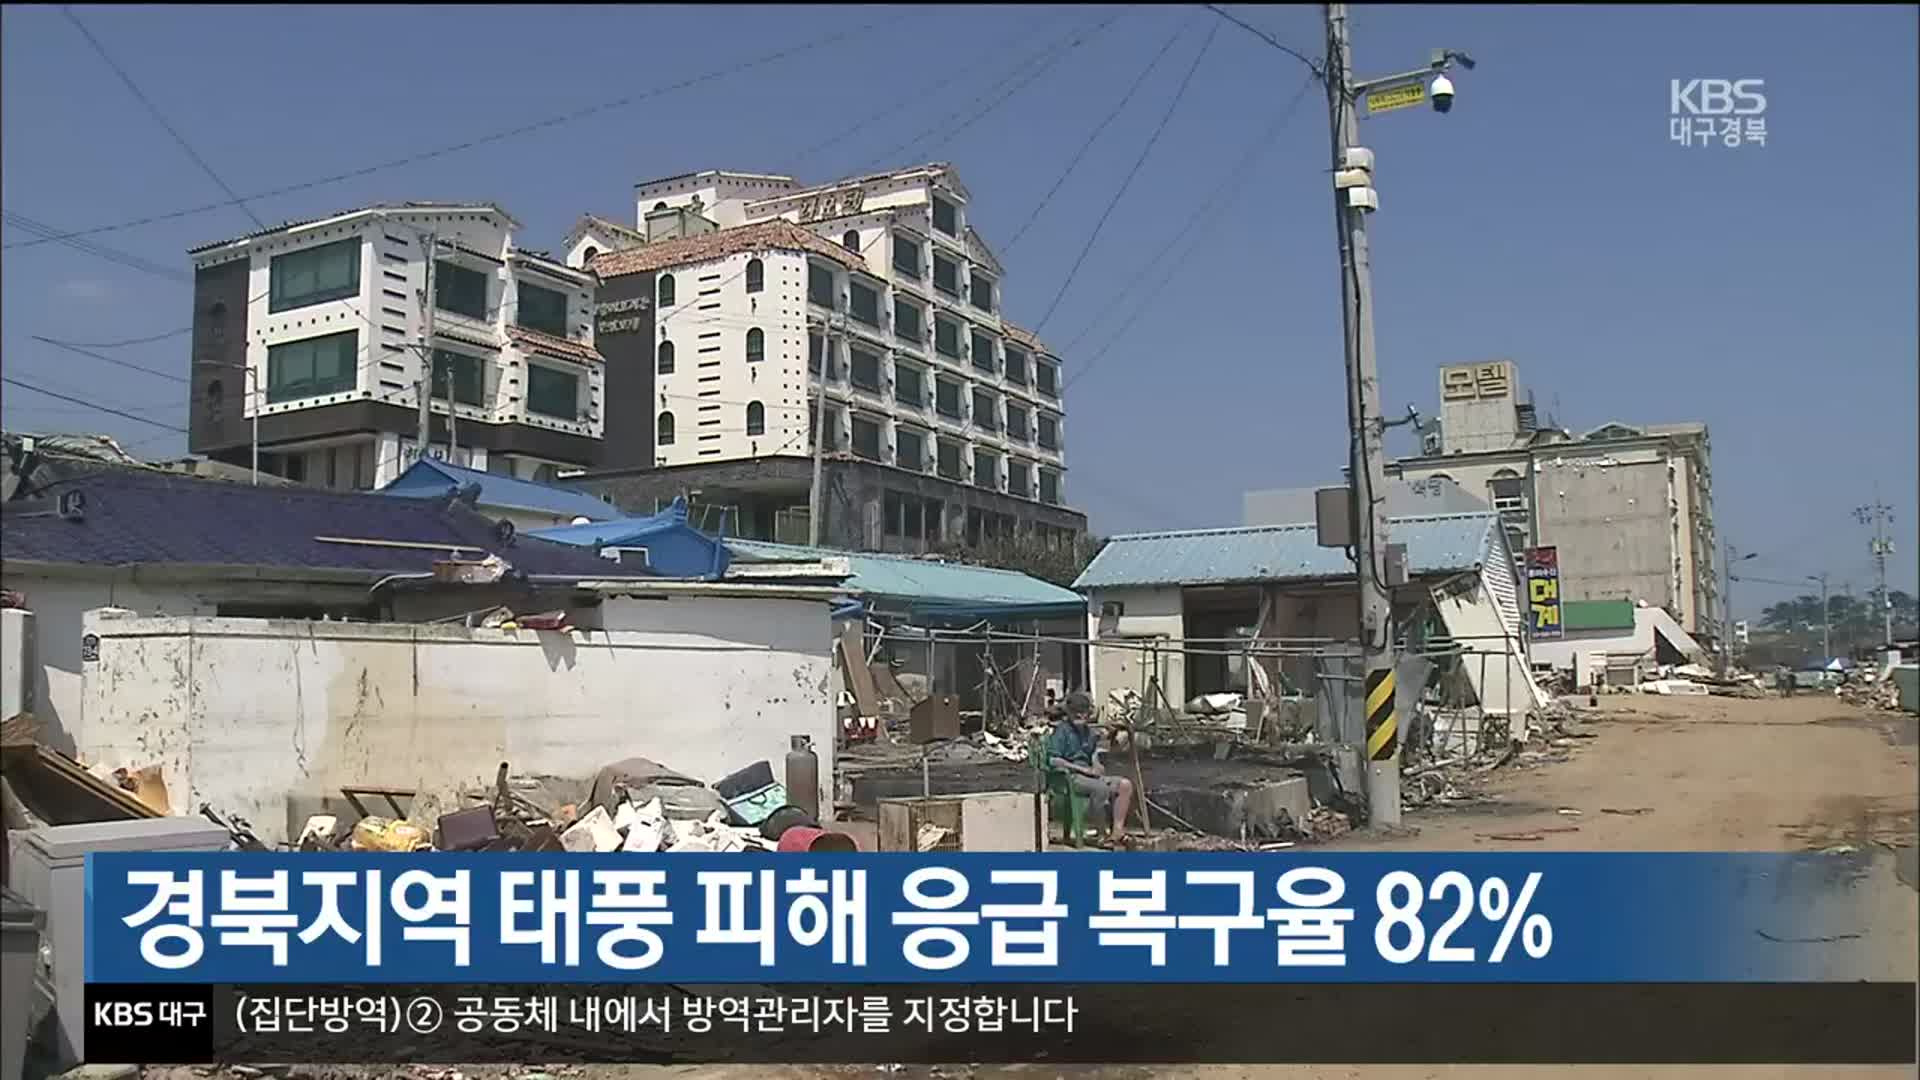 경북지역 태풍 피해 응급 복구율 82%